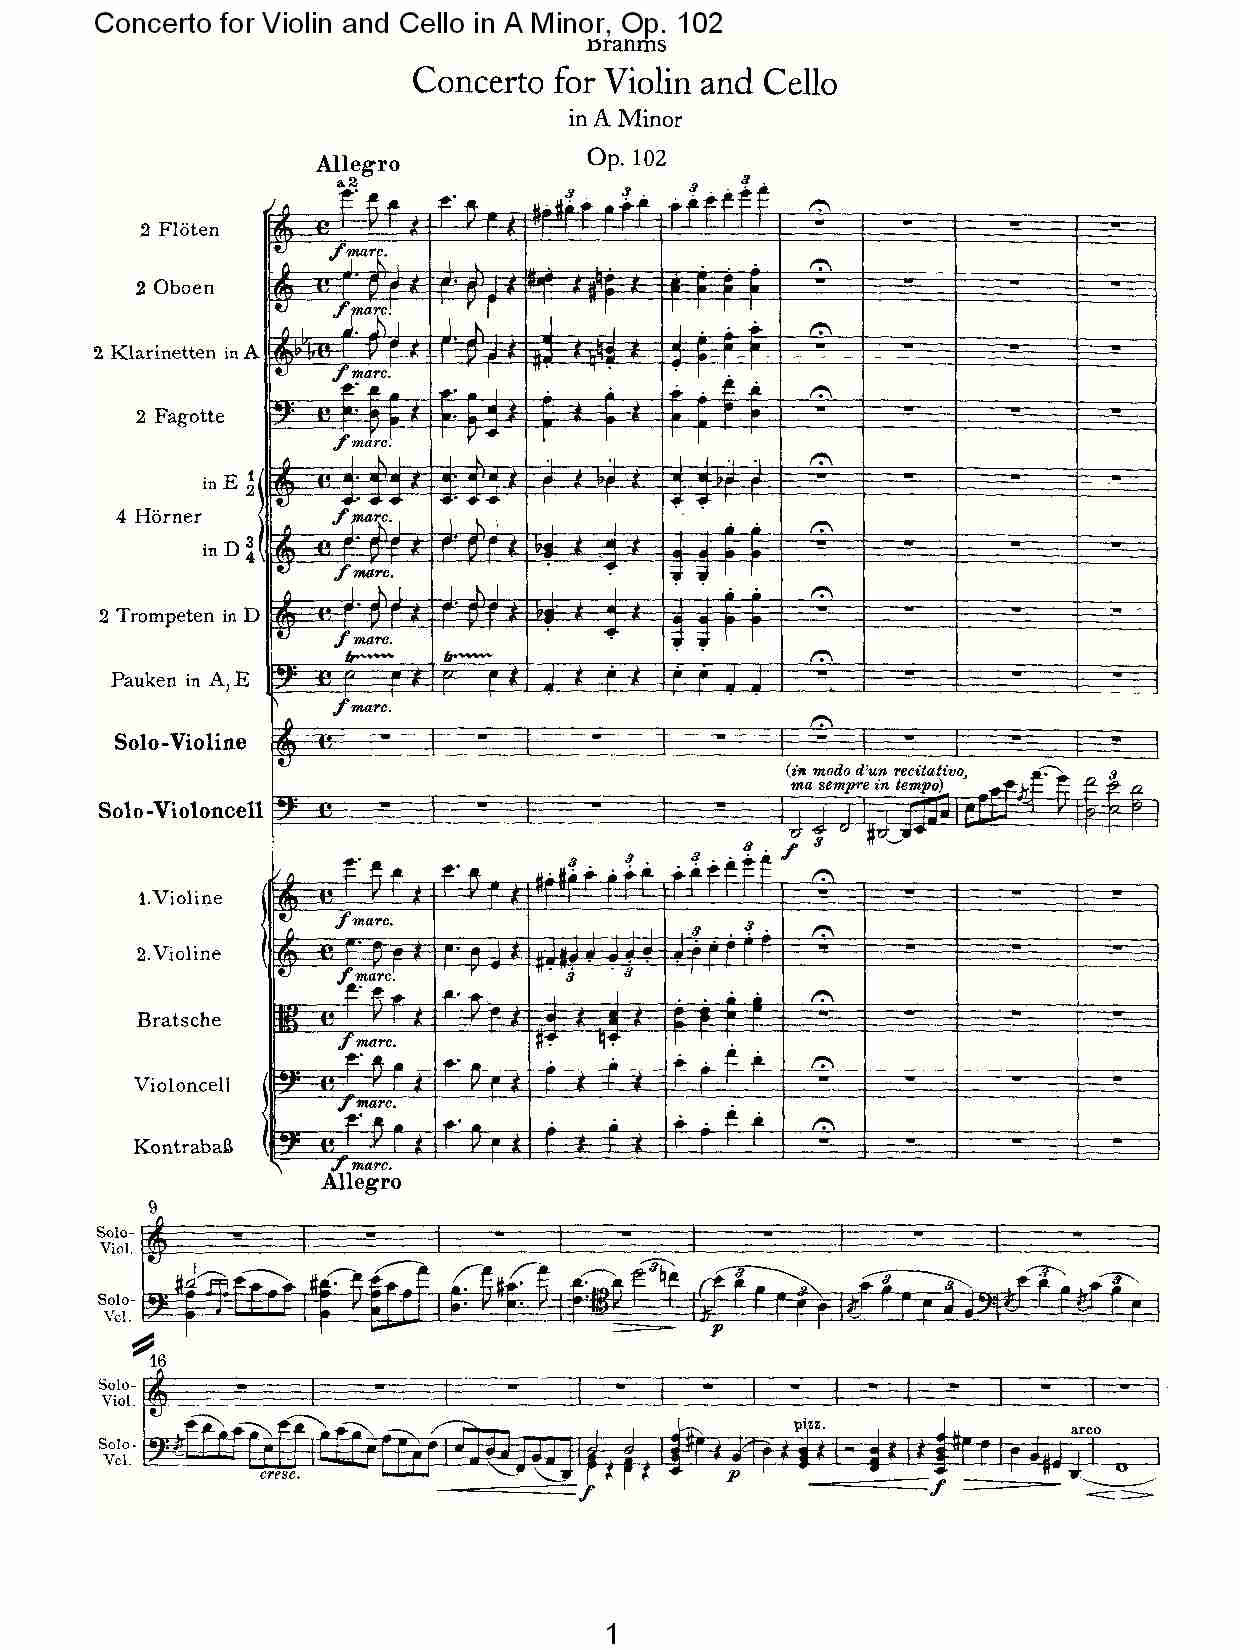 A小调小提琴与大提琴协奏曲, Op.102第一乐章（一）总谱（图1）